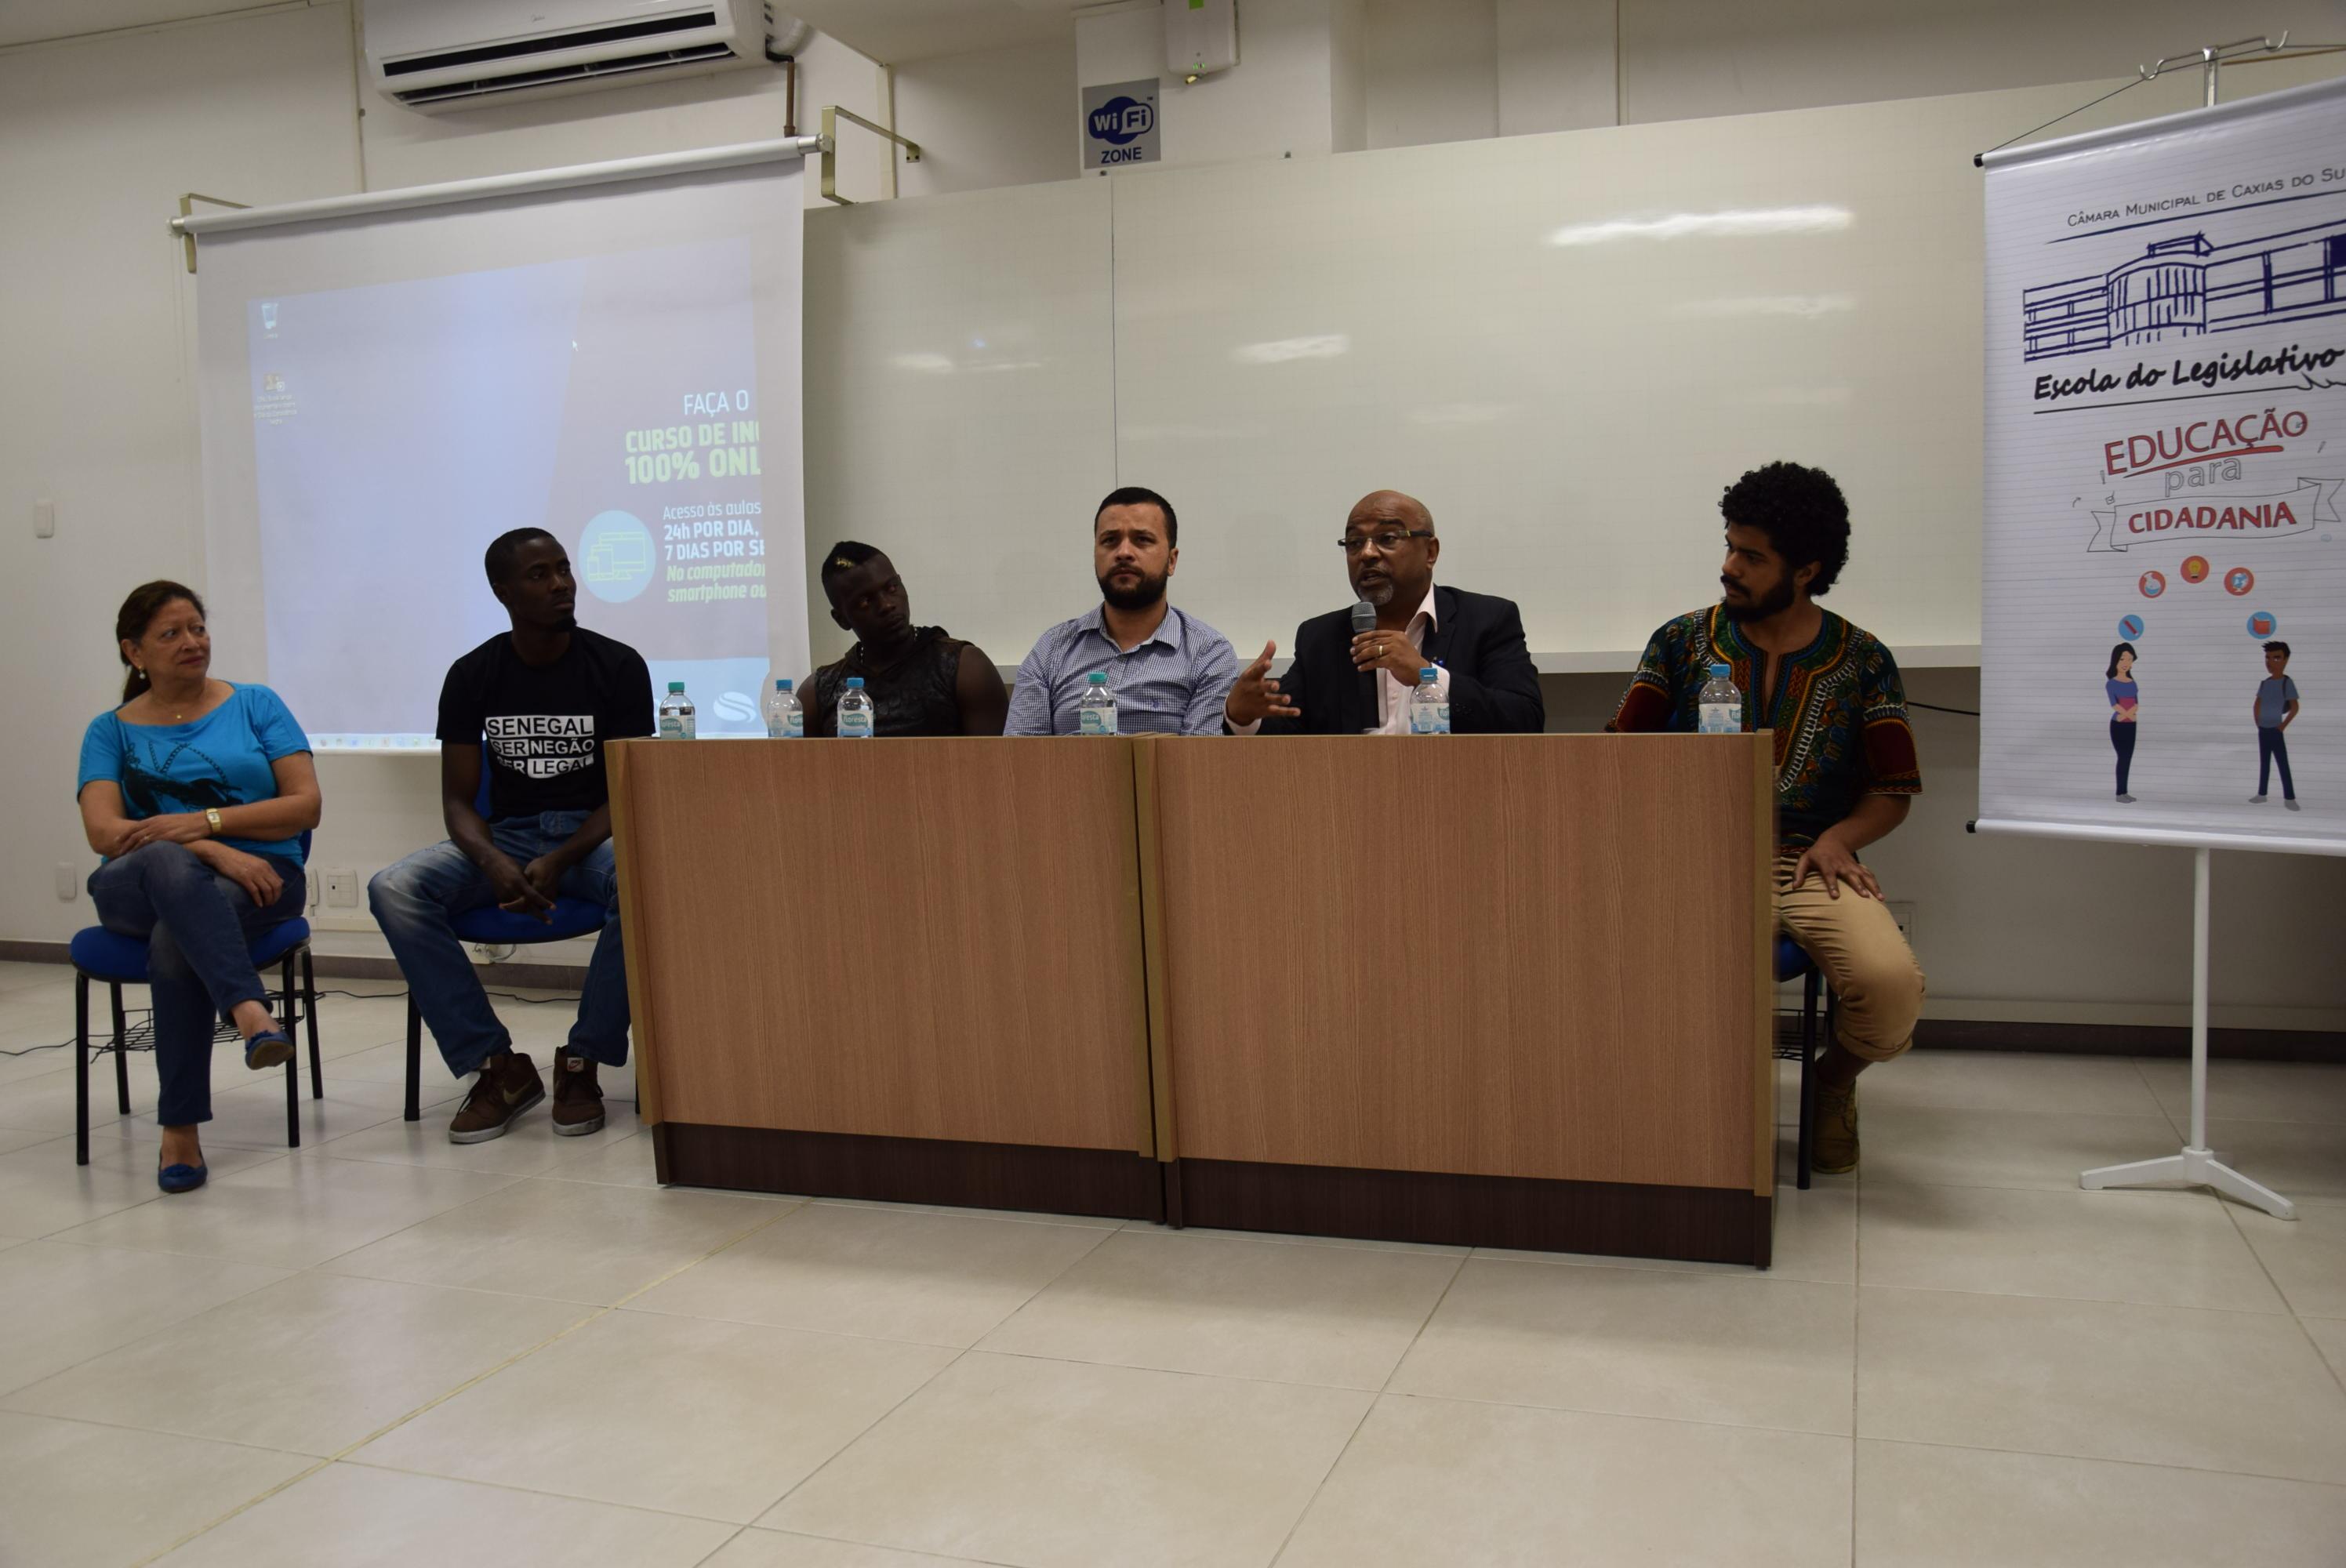 Leia mais sobre Cine debate coordenado pela Escola do Legislativo mobiliza discussões sobre a população negra em Caxias e no país